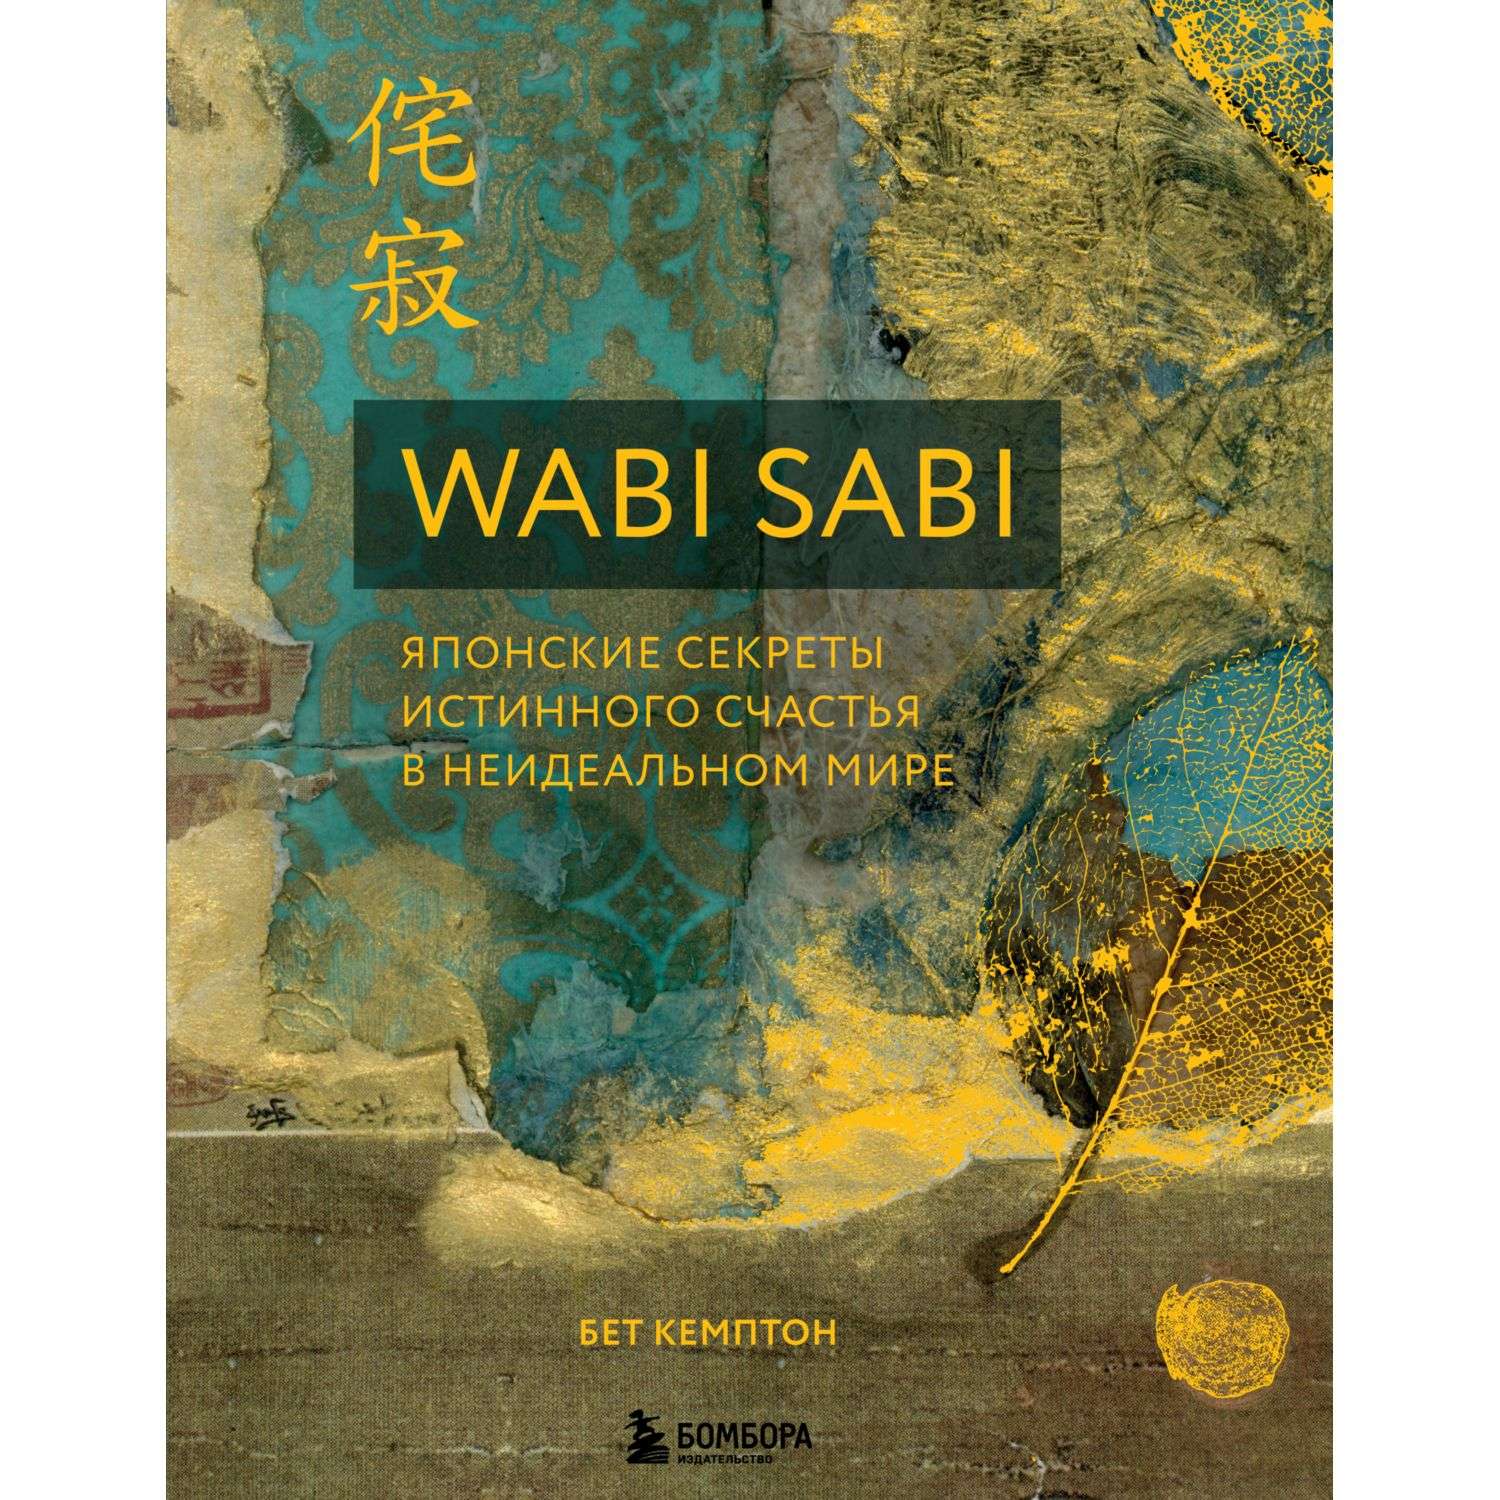 Книга БОМБОРА Wabi Sabi Японские секреты истинного счастья в неидеальном мире - фото 2